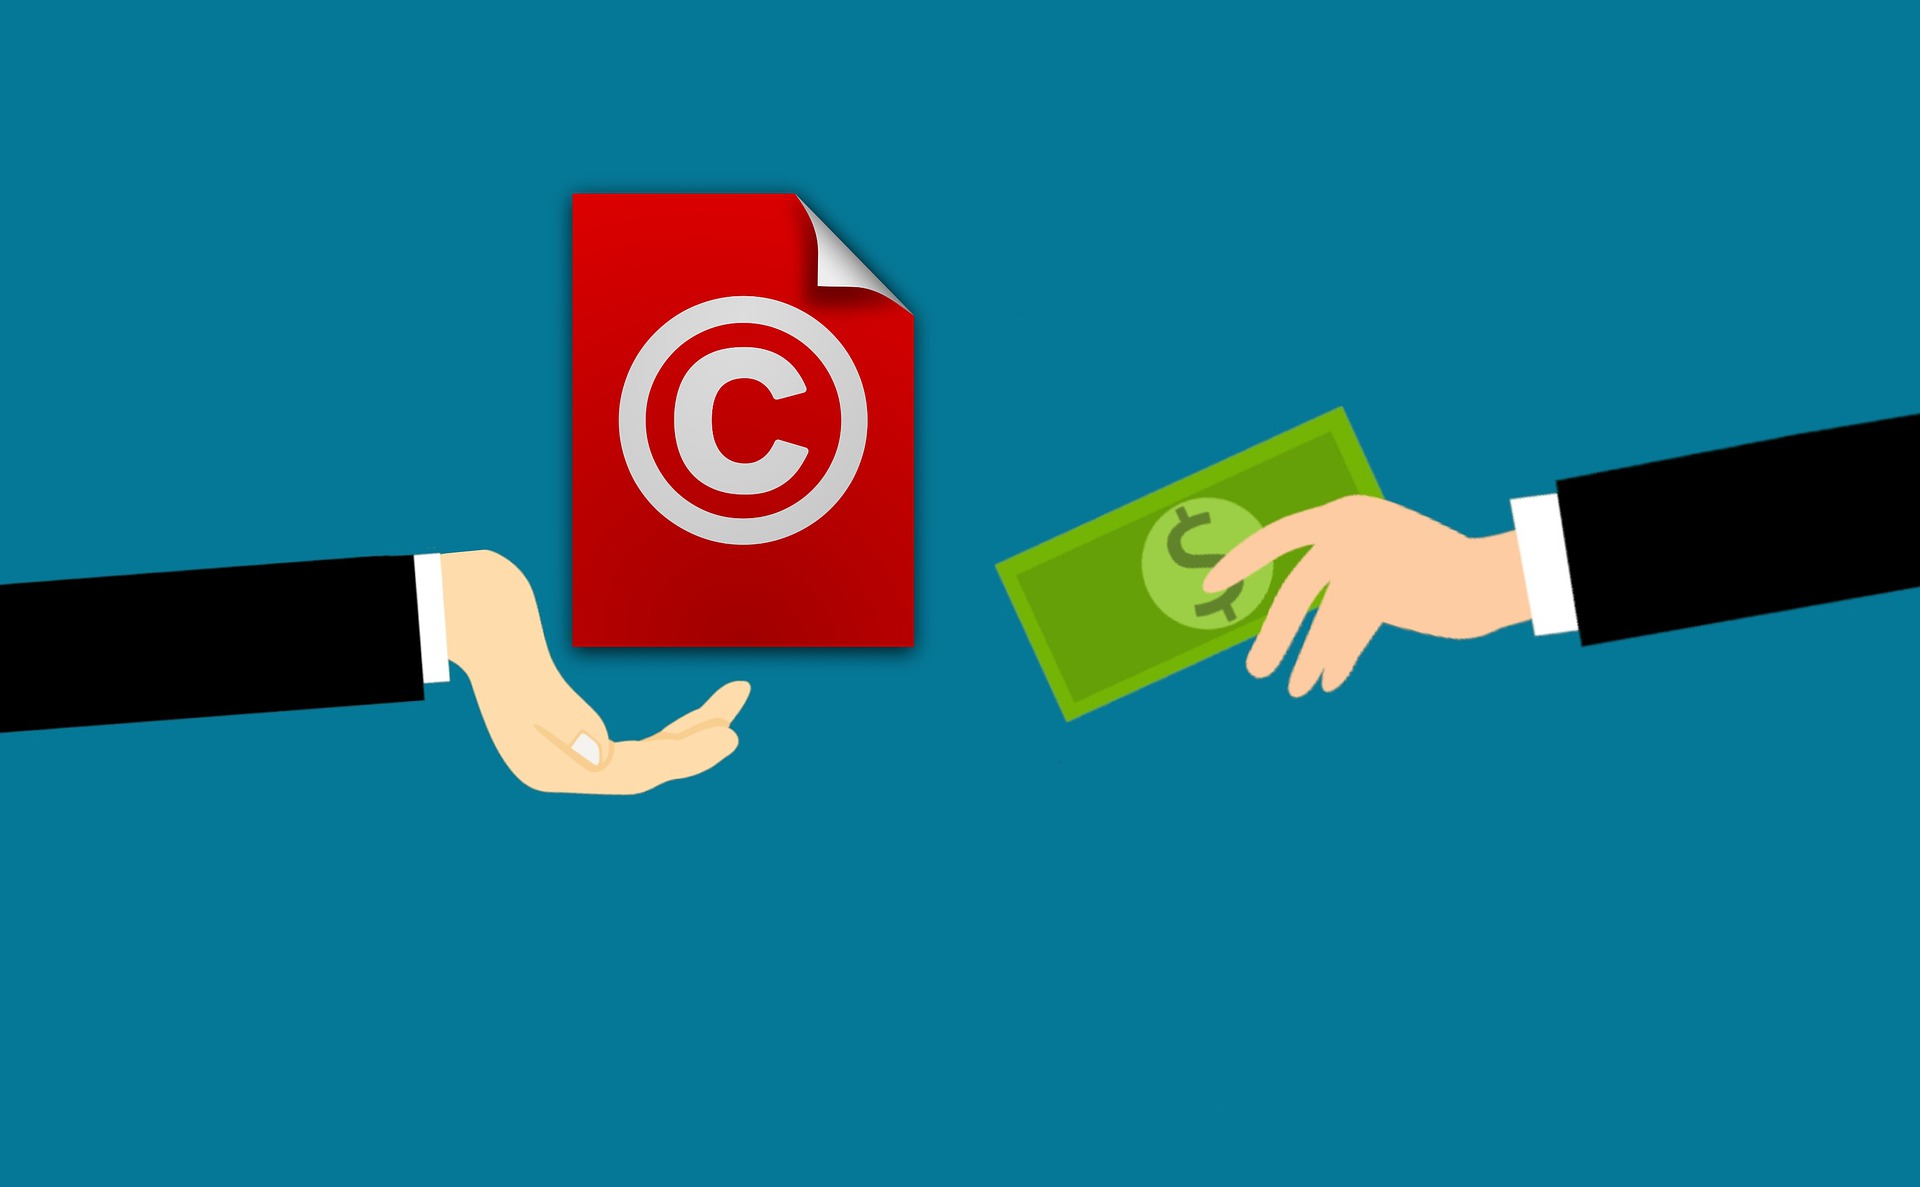 La propiedad intelectual protege las creaciones artísticas y científicas. En las primeras, se otorgan licencias para su uso y reproducción. (Foto Prensa Libre, Pixabay)